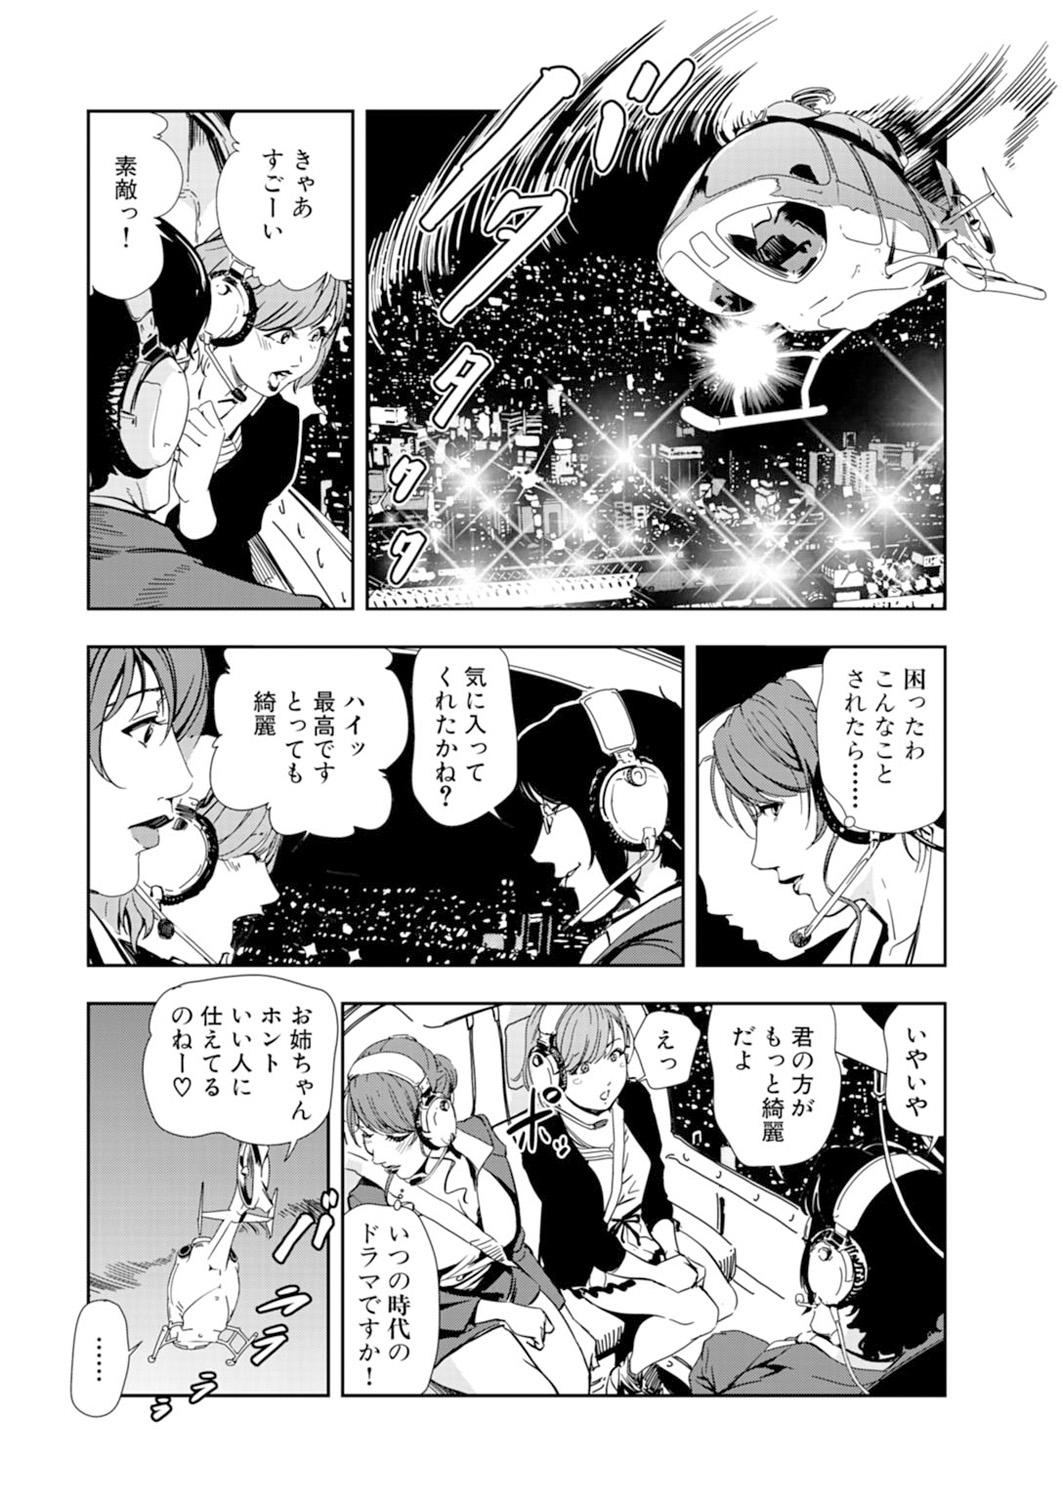 Camwhore Nikuhisyo Yukiko 14 Deep - Page 8